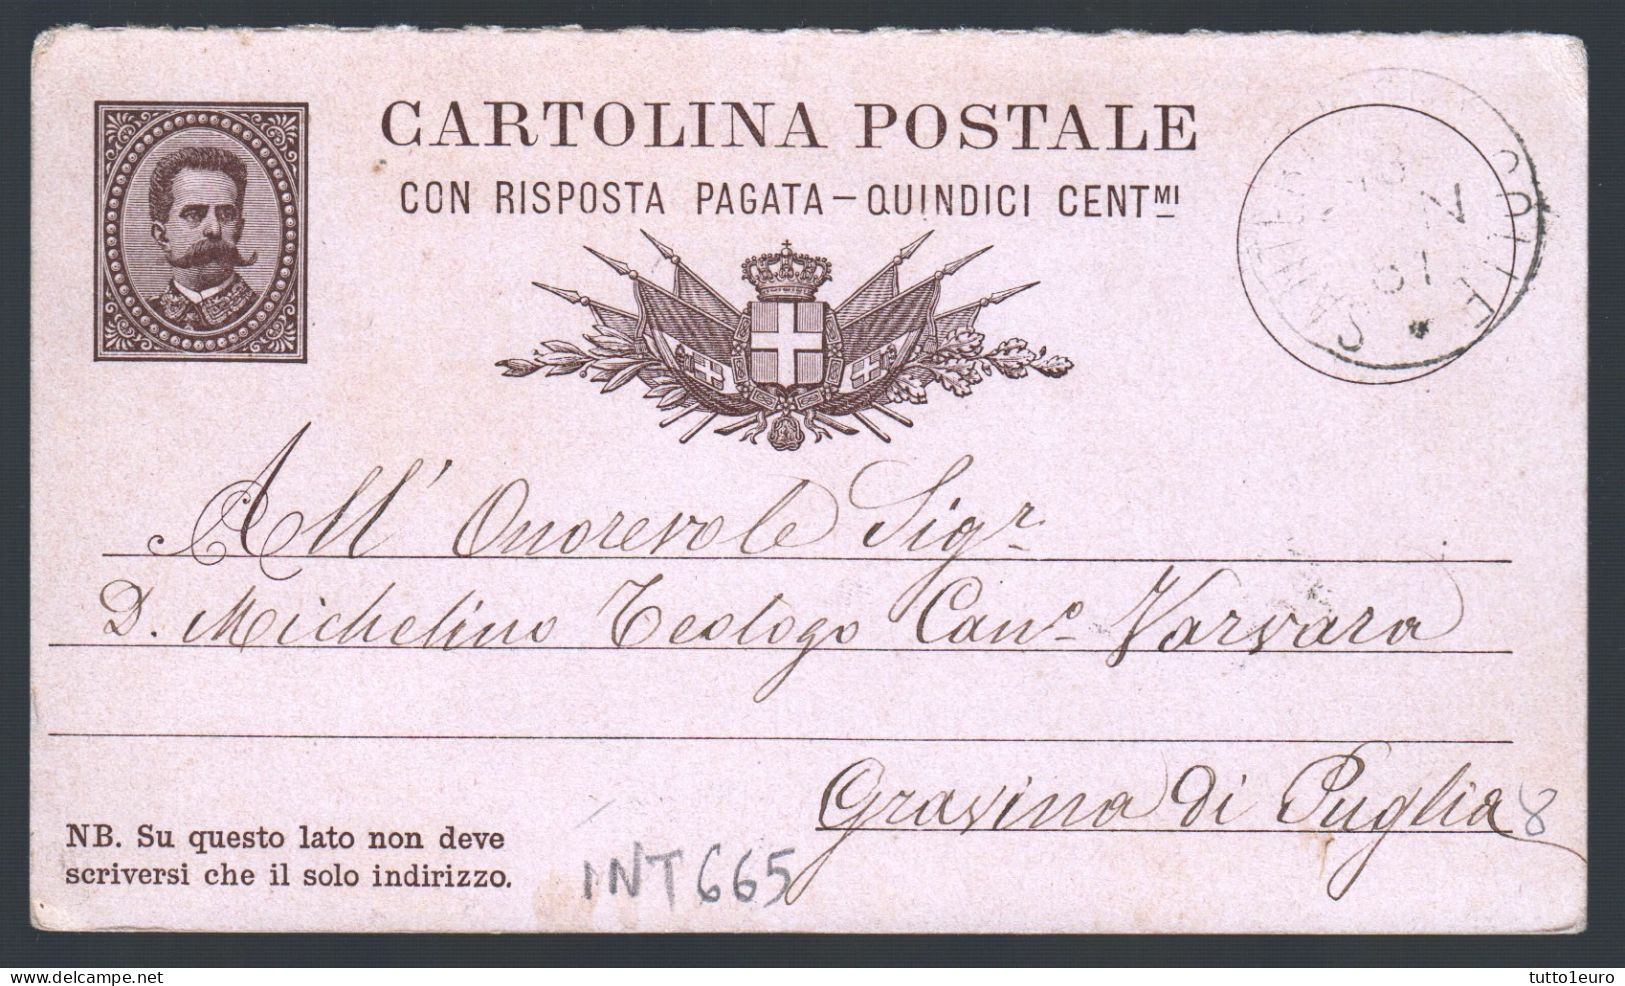 CARTOLINA POSTALE SPEDITA DA  SANTERAMO IN COLLE A GRAVINA IN PUGLIA NEL 1881 (INT665) - Stamped Stationery